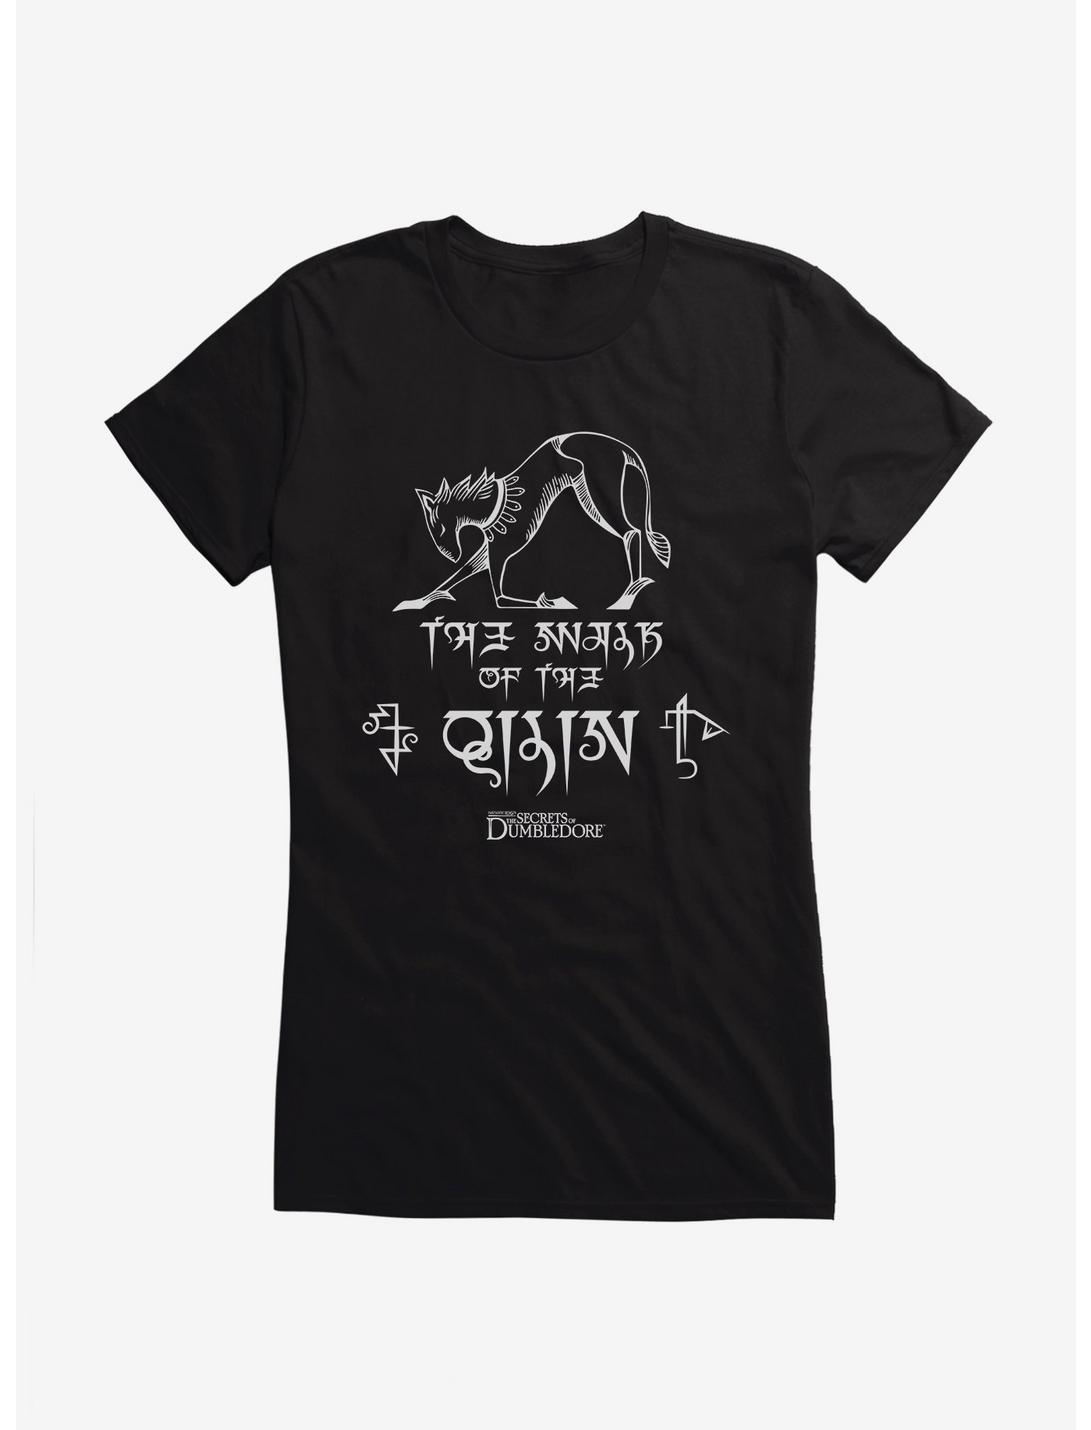 Fantastic Beasts Qilin Walk Girls T-Shirt, , hi-res